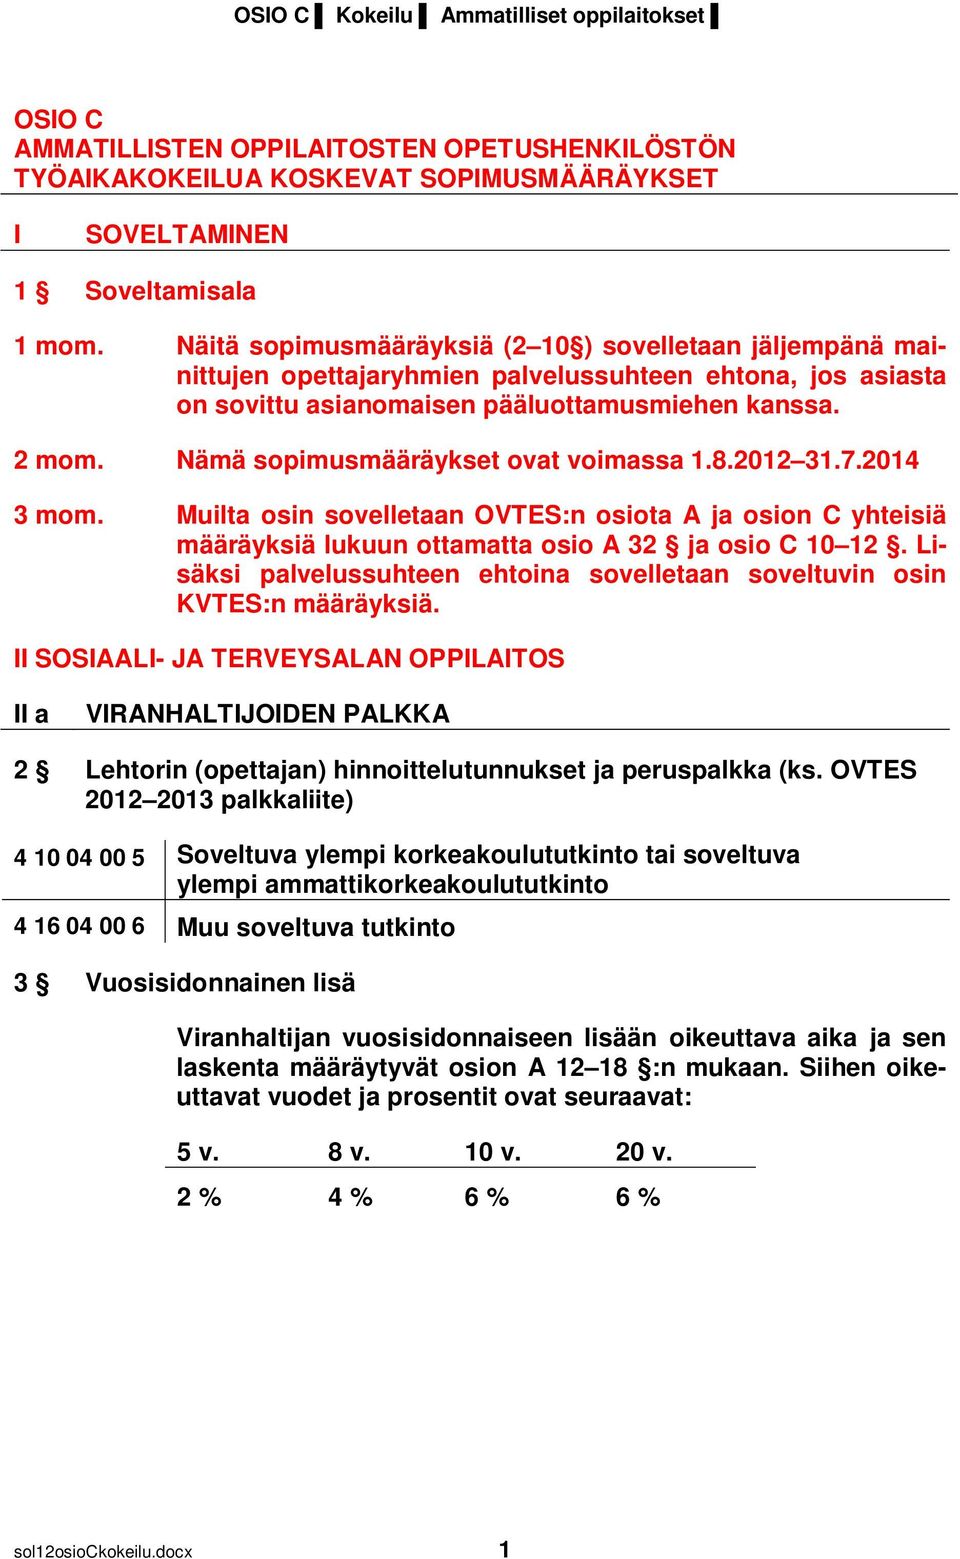 Nämä sopimusmääräykset ovat voimassa 1.8.2012 31.7.2014 3 mom. Muilta osin sovelletaan OVTES:n osiota A ja osion C yhteisiä määräyksiä lukuun ottamatta osio A 32 ja osio C 10 12.